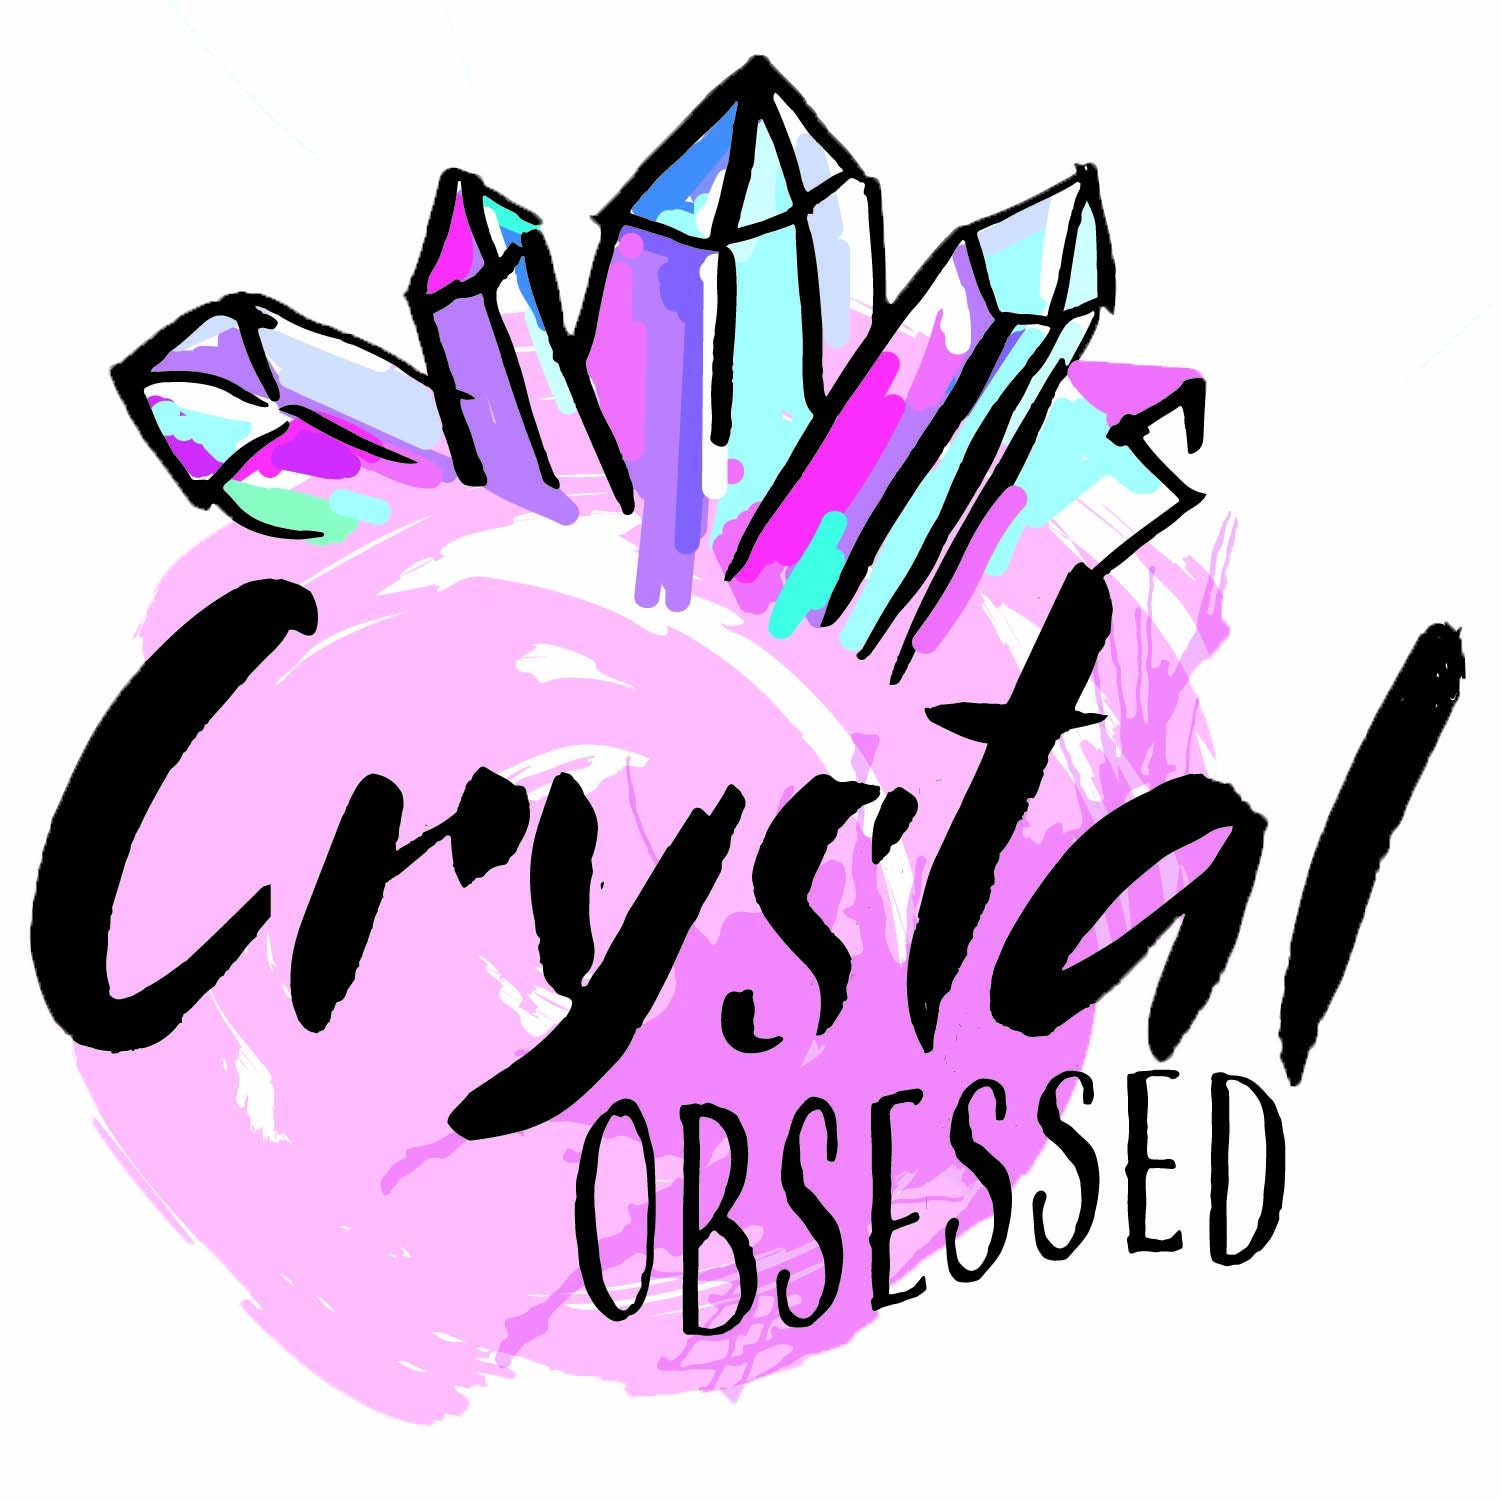 crystalobsessed1111 - Etsy